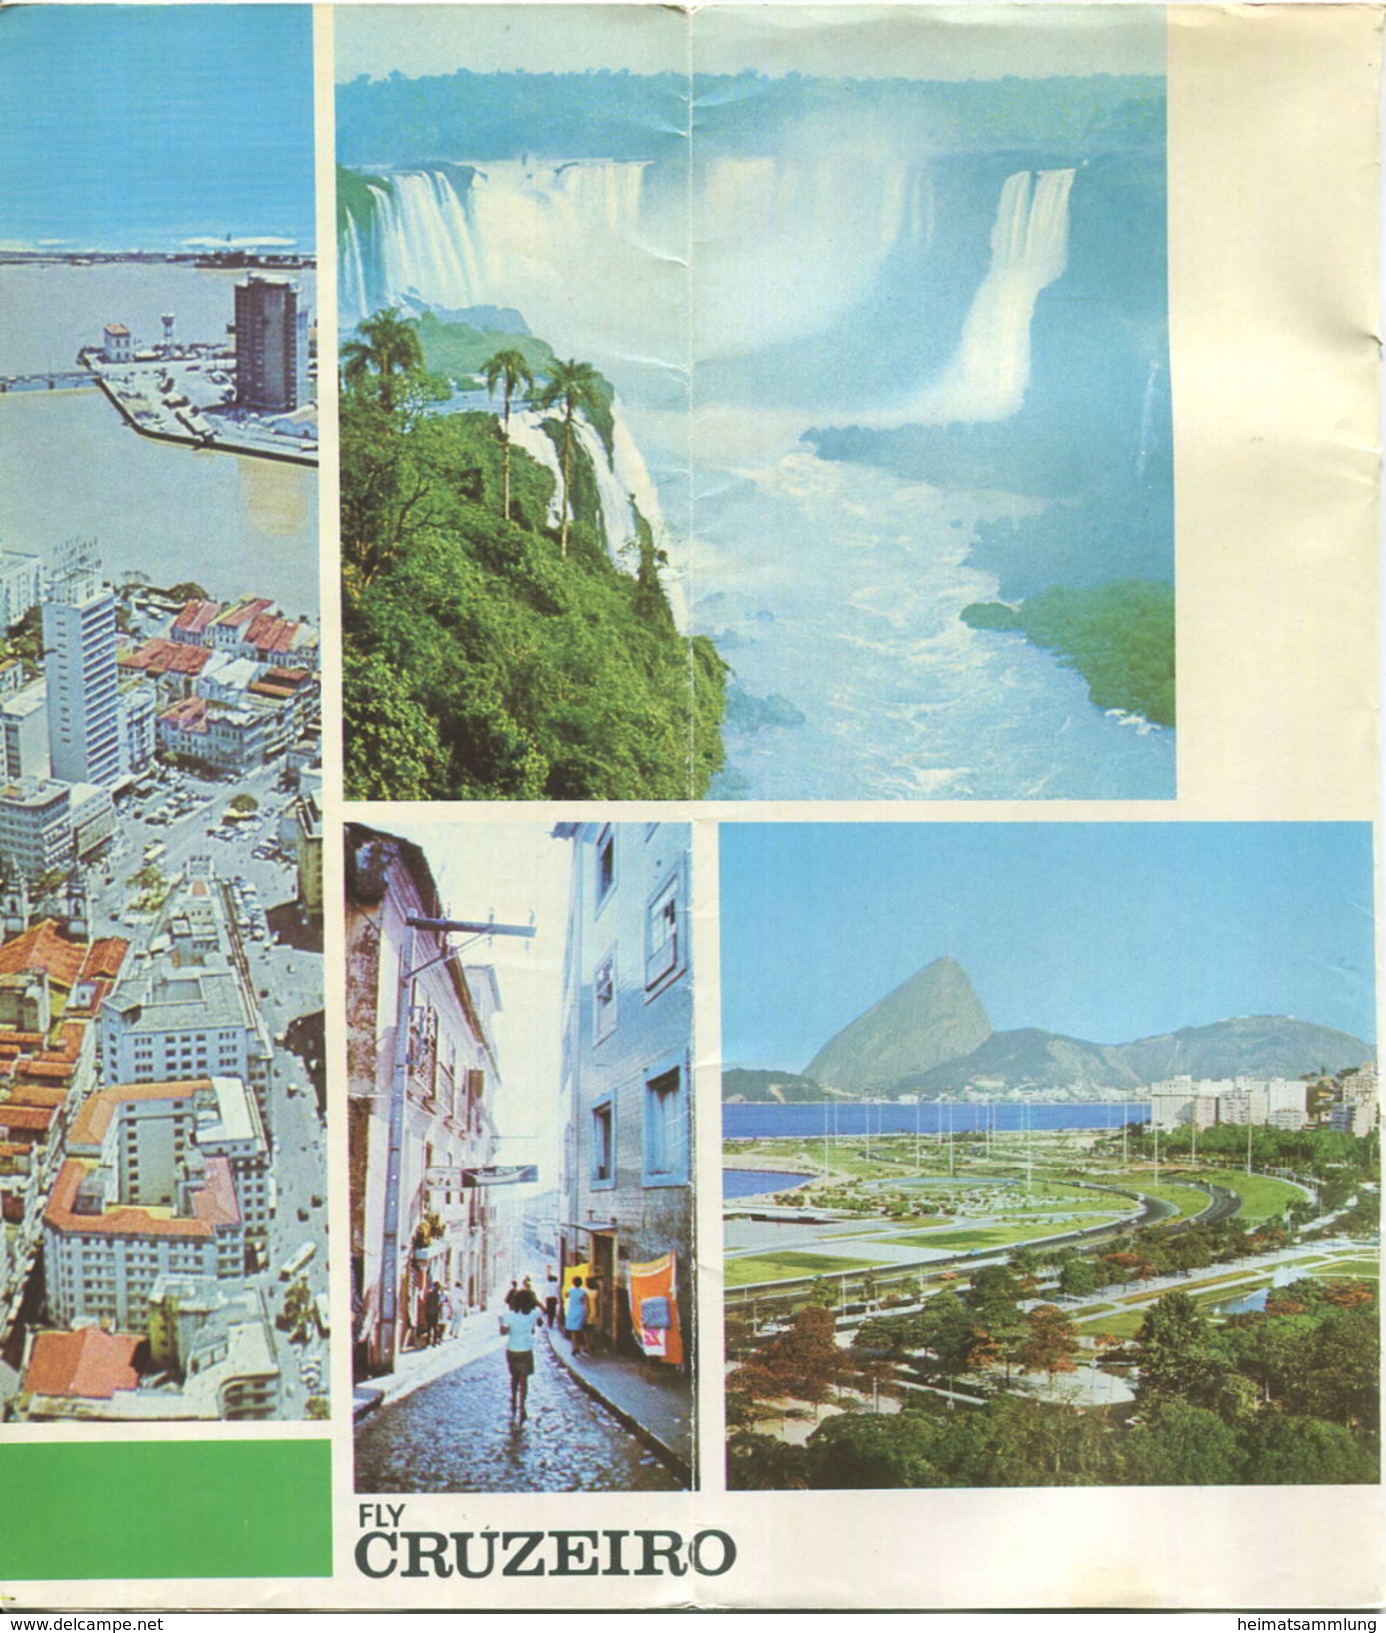 Brasil - Timetable Fly Cruzeiro 1970 - 8 Seiten Mit 10 Abbildungen - Flugdaten - Mondo